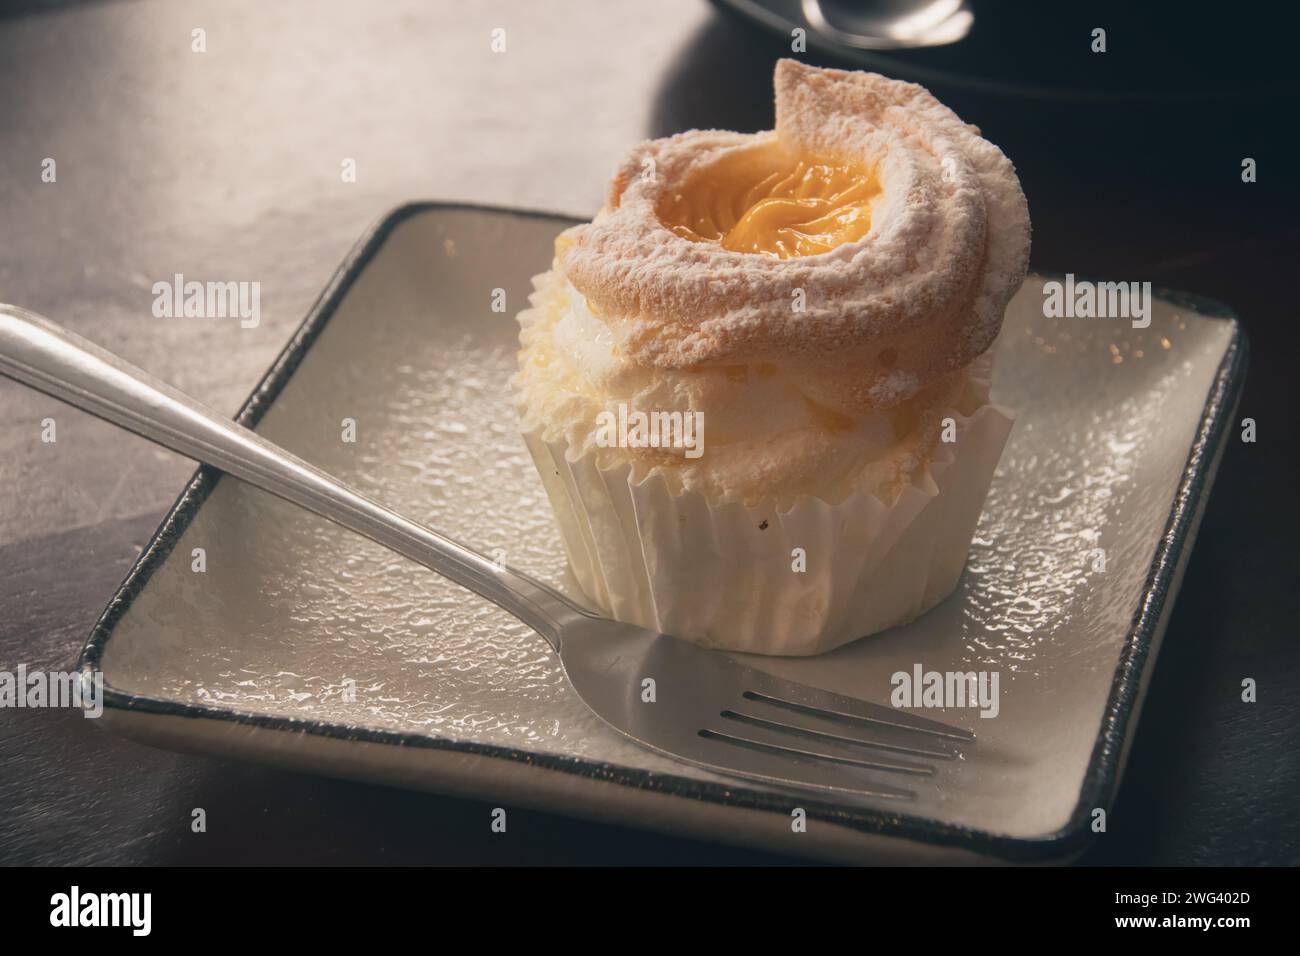 Nahaufnahme eines brazo de mercedes Cupcake, ein beliebtes authentisches philippinisches Dessert Stockfoto